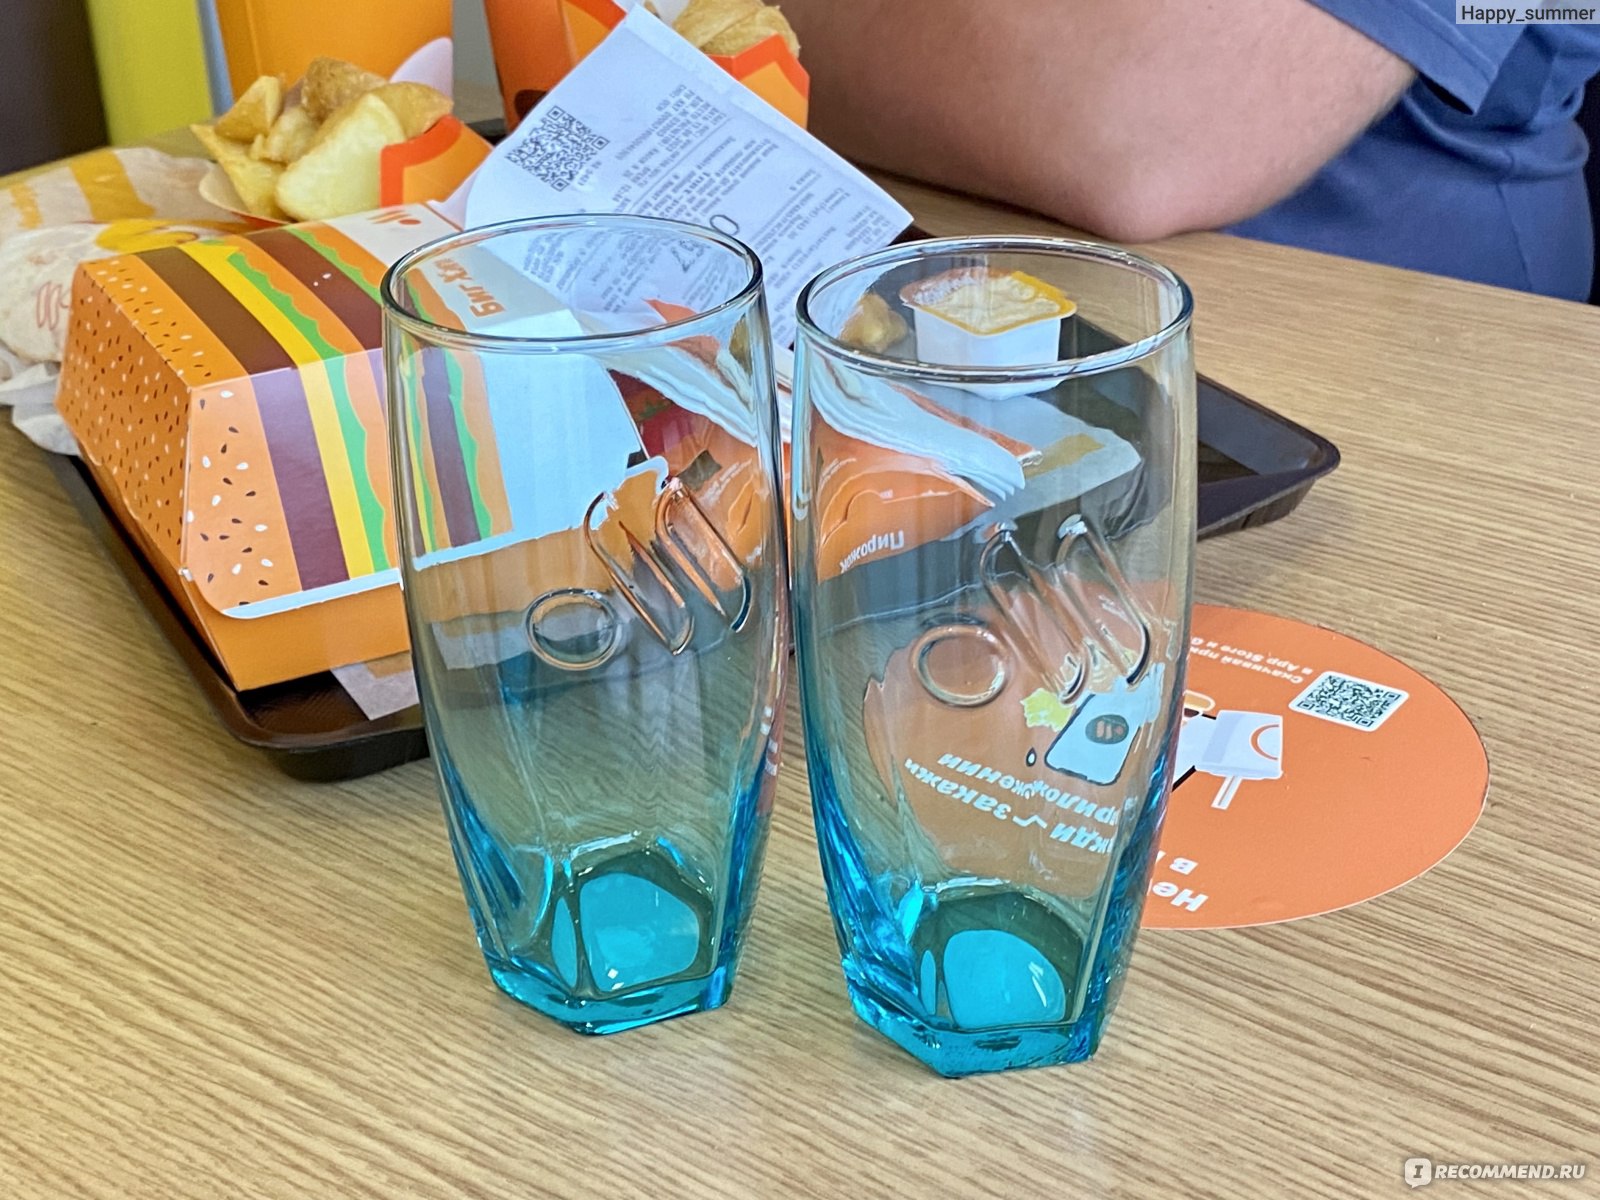 На столе стоят восемь стаканов с водой разрешается взять любые два стакана